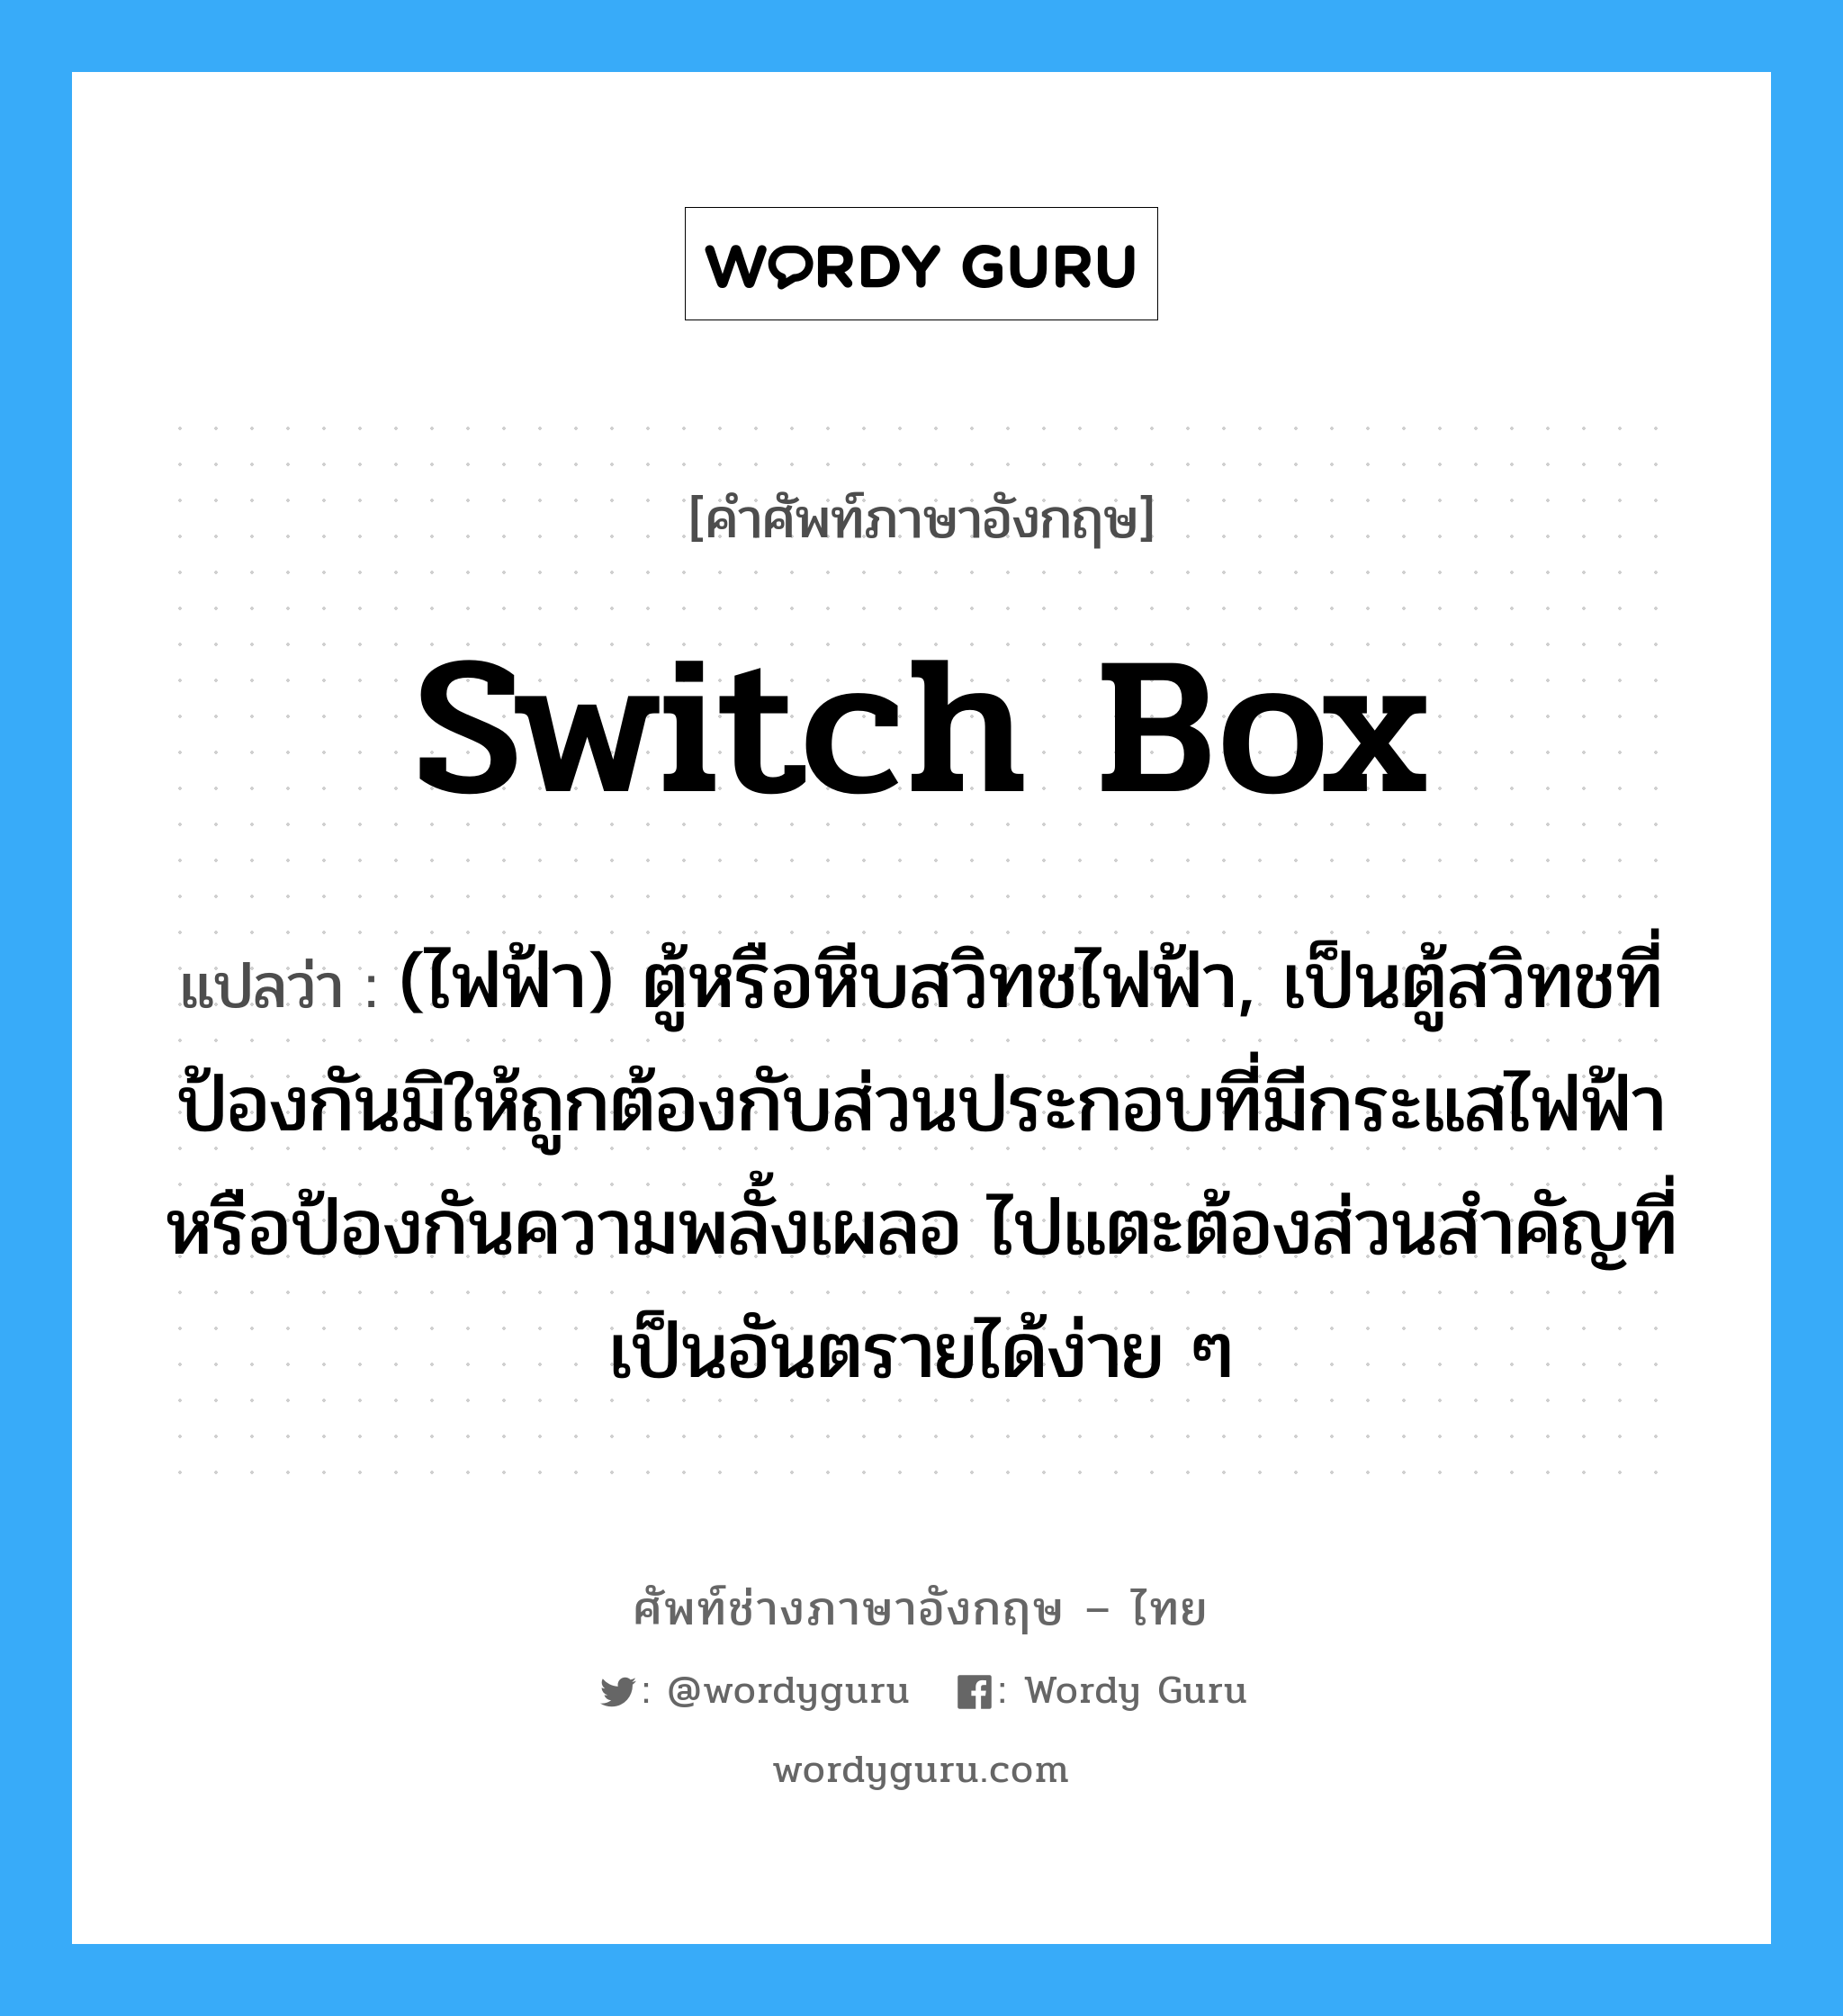 switch box แปลว่า?, คำศัพท์ช่างภาษาอังกฤษ - ไทย switch box คำศัพท์ภาษาอังกฤษ switch box แปลว่า (ไฟฟ้า) ตู้หรือหีบสวิทชไฟฟ้า, เป็นตู้สวิทชที่ป้องกันมิให้ถูกต้องกับส่วนประกอบที่มีกระแสไฟฟ้าหรือป้องกันความพลั้งเผลอ ไปแตะต้องส่วนสำคัญที่เป็นอันตรายได้ง่าย ๆ